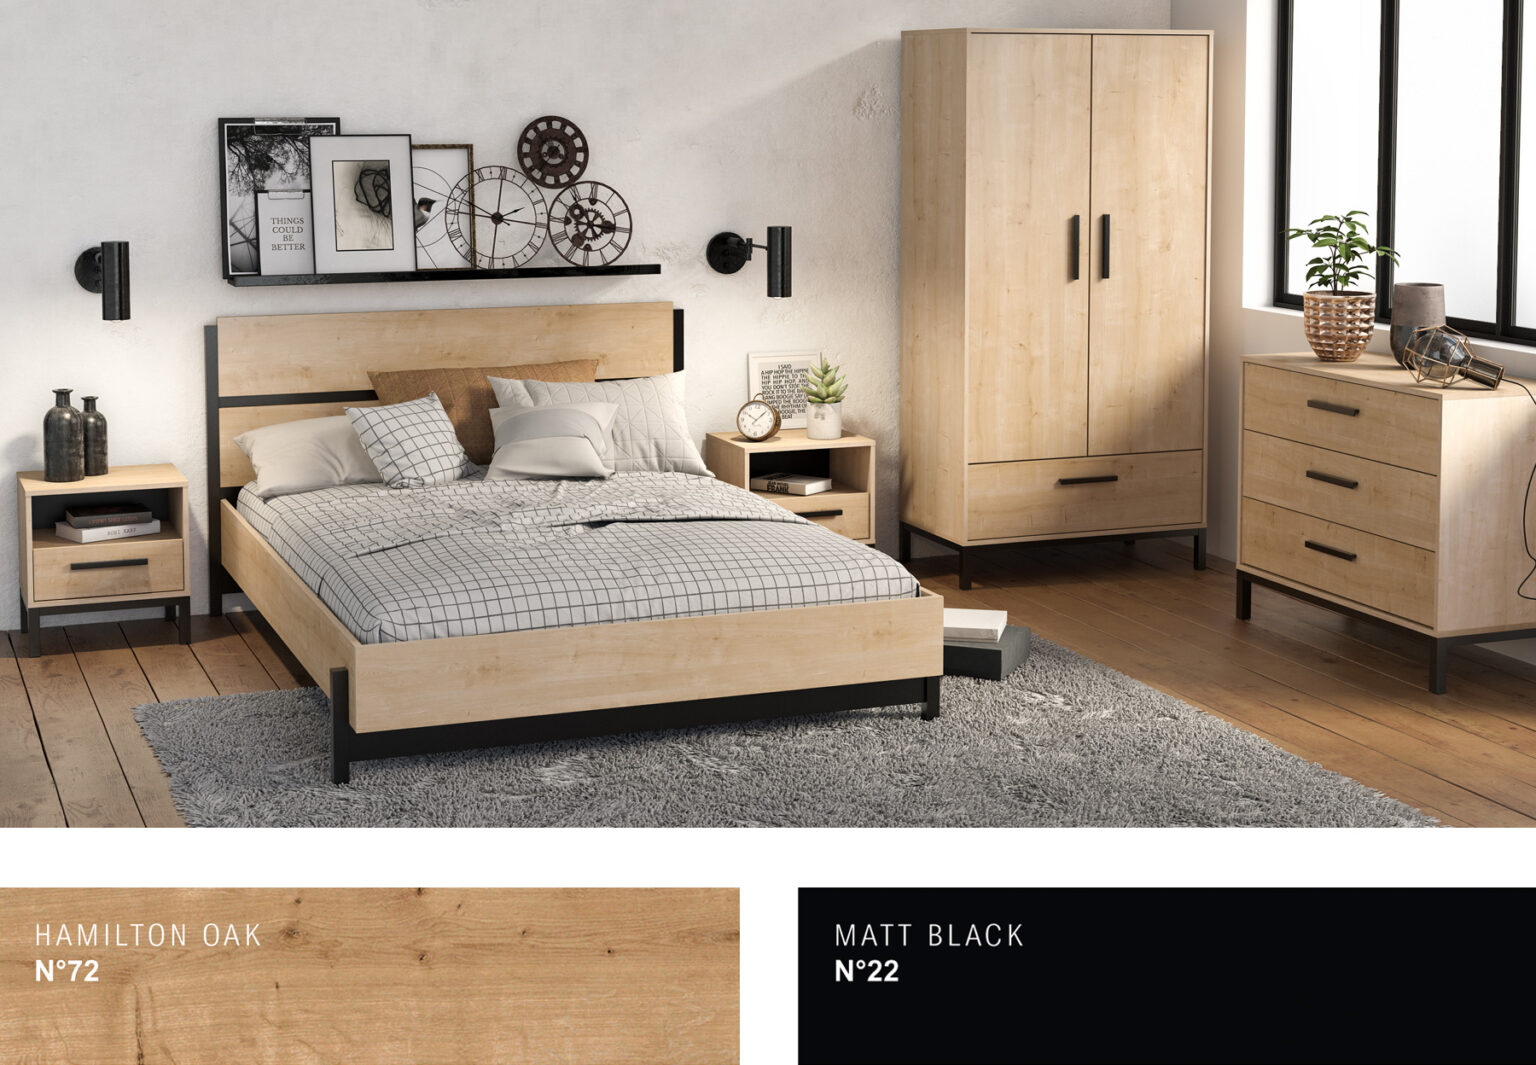 gamme-craft-bedroom-visuel-1536x1065